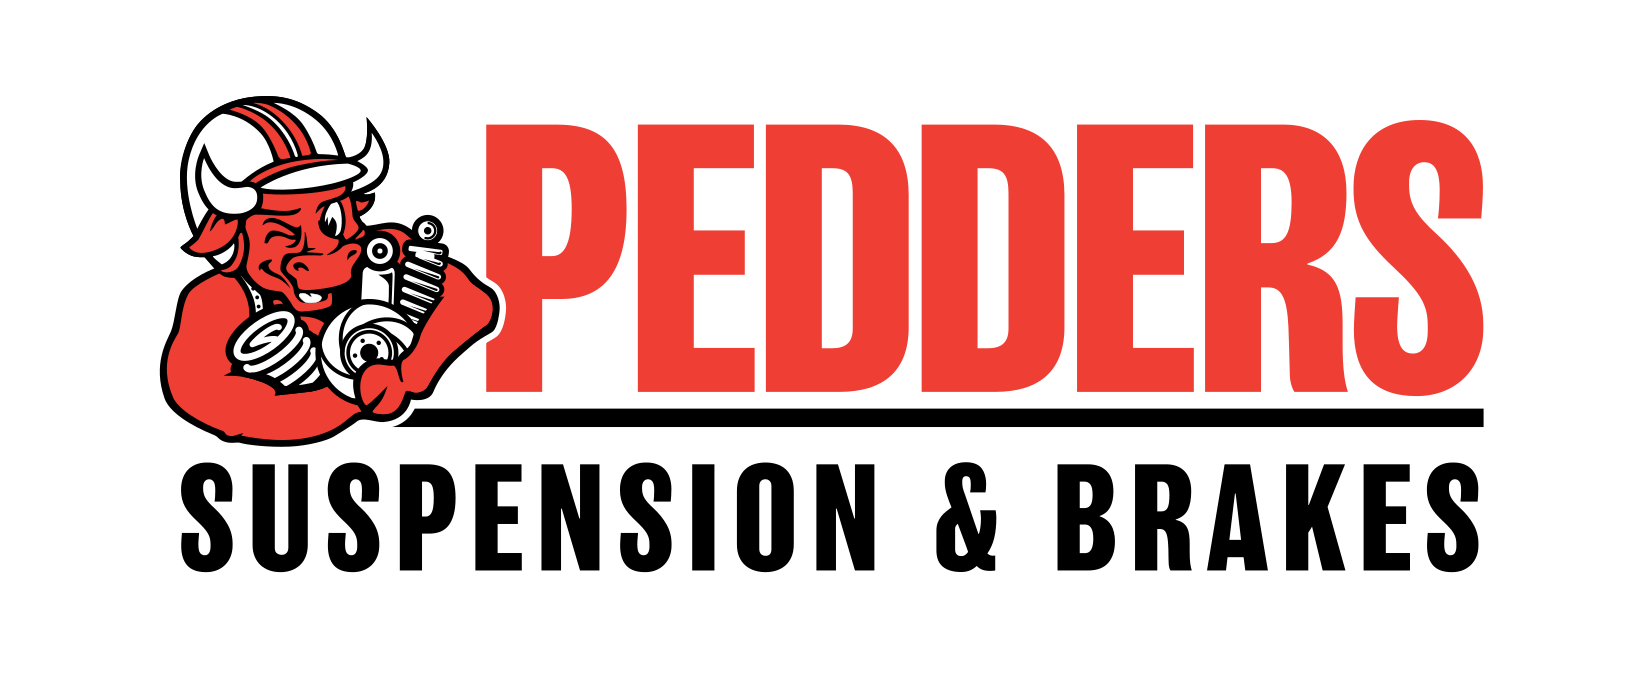 PEDDERS